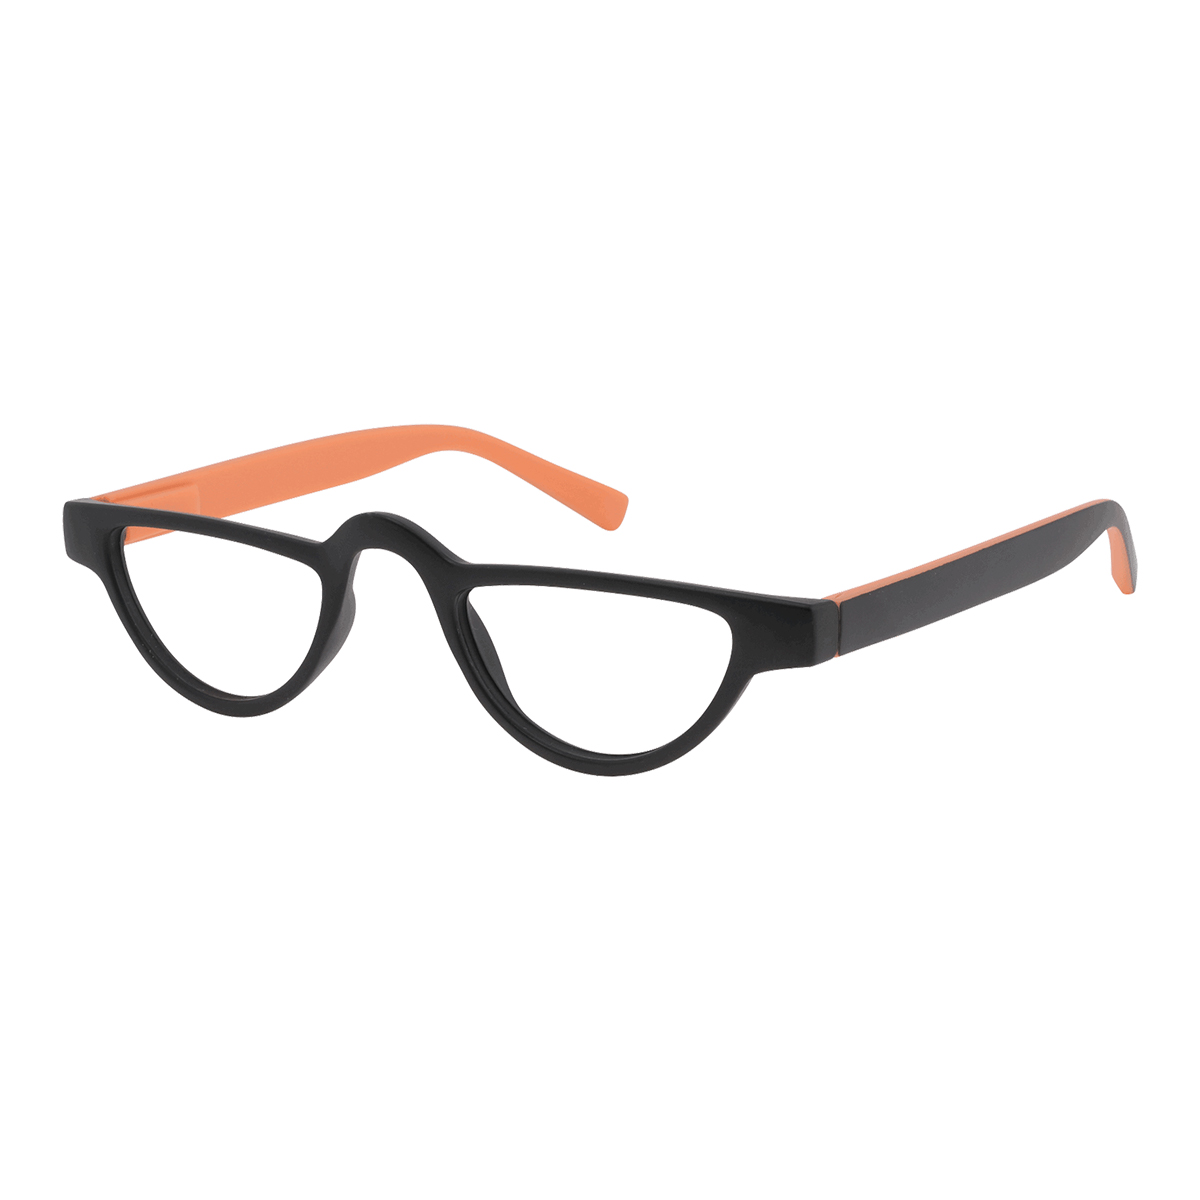 Ocytus - Geometric Black-Orange Reading Glasses for Men & Women